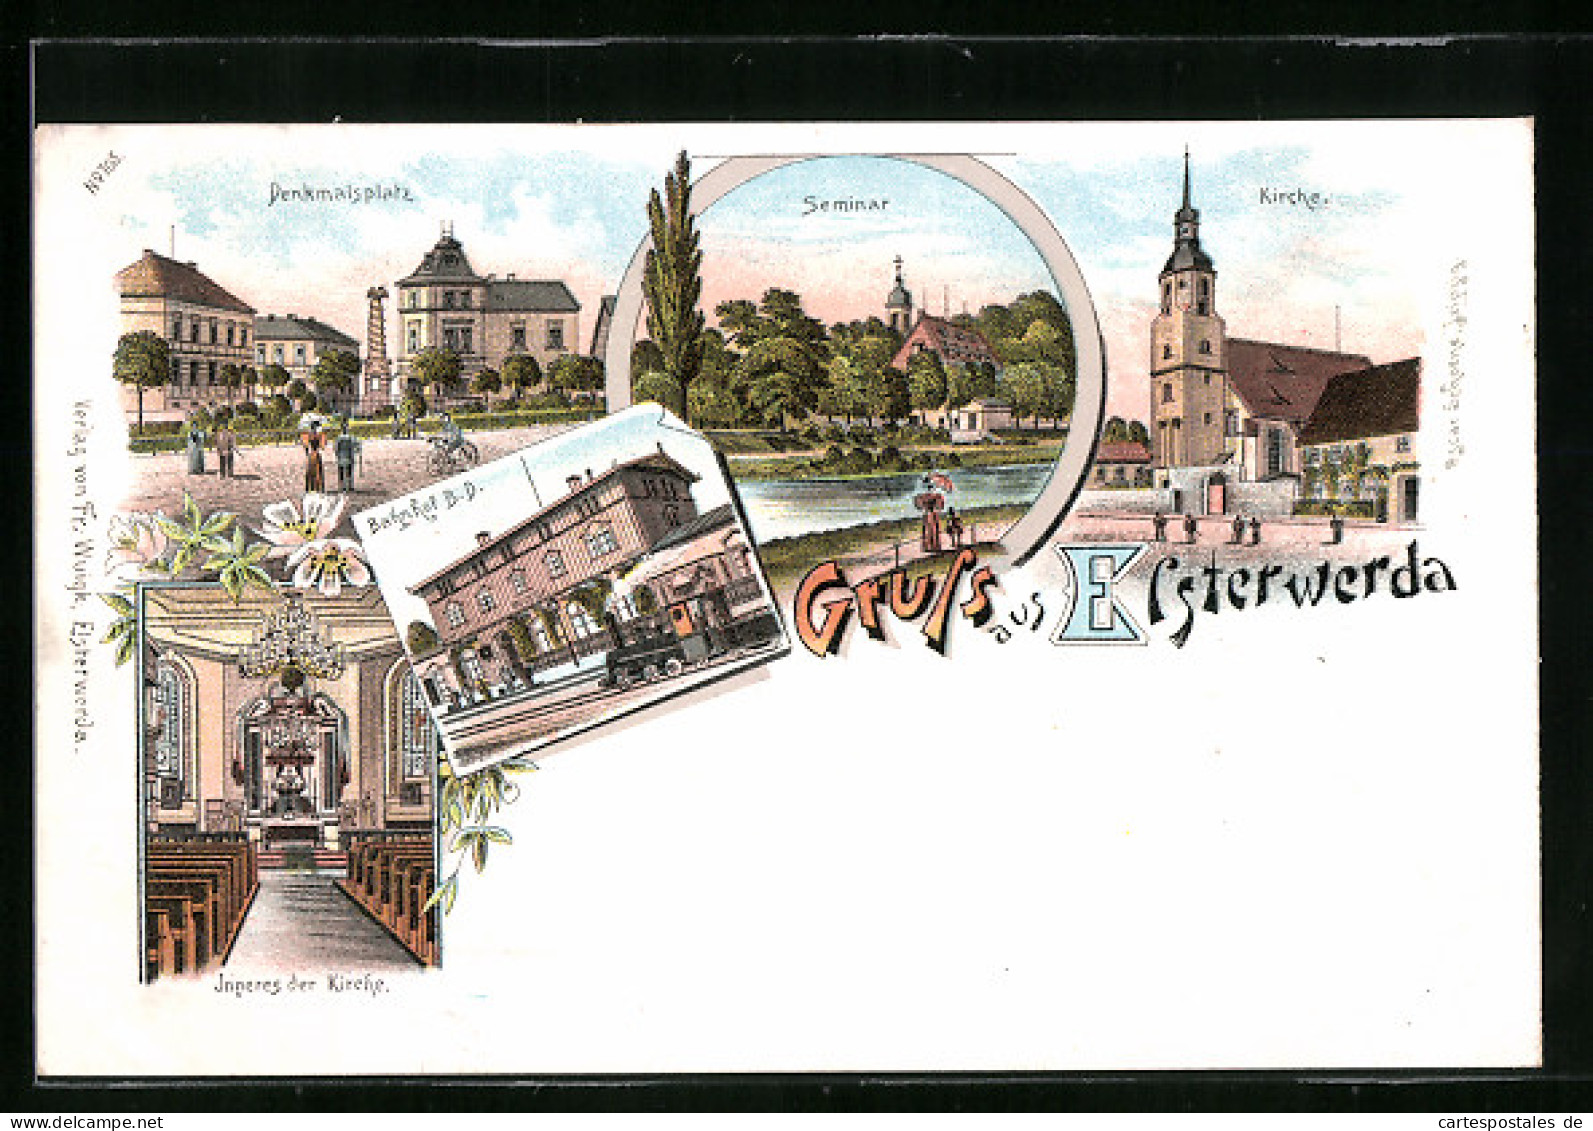 Lithographie Elsterwerda, Bahnhof, Denkmalsplatz, Seminar  - Elsterwerda